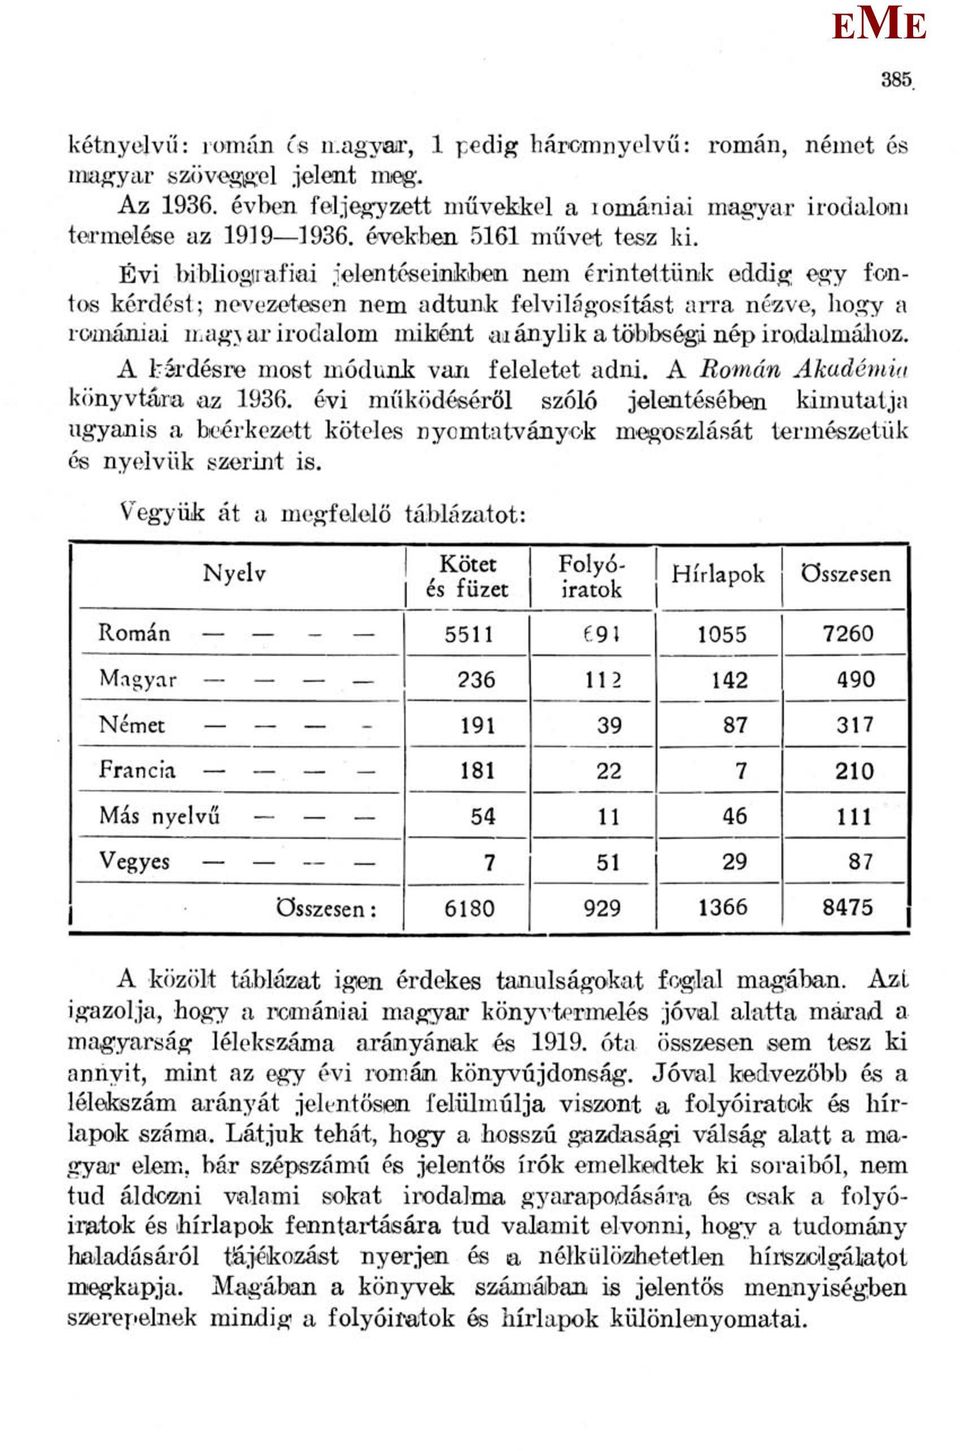 Évi bibliográfiái jelentéseinkben nem érintettünk eddig egy fontos kérdést ; nevezetesen nem adtunk felvilágosítást arra nézve, hogy a romániai magyar irodalom miként aaánylik a többségi nép